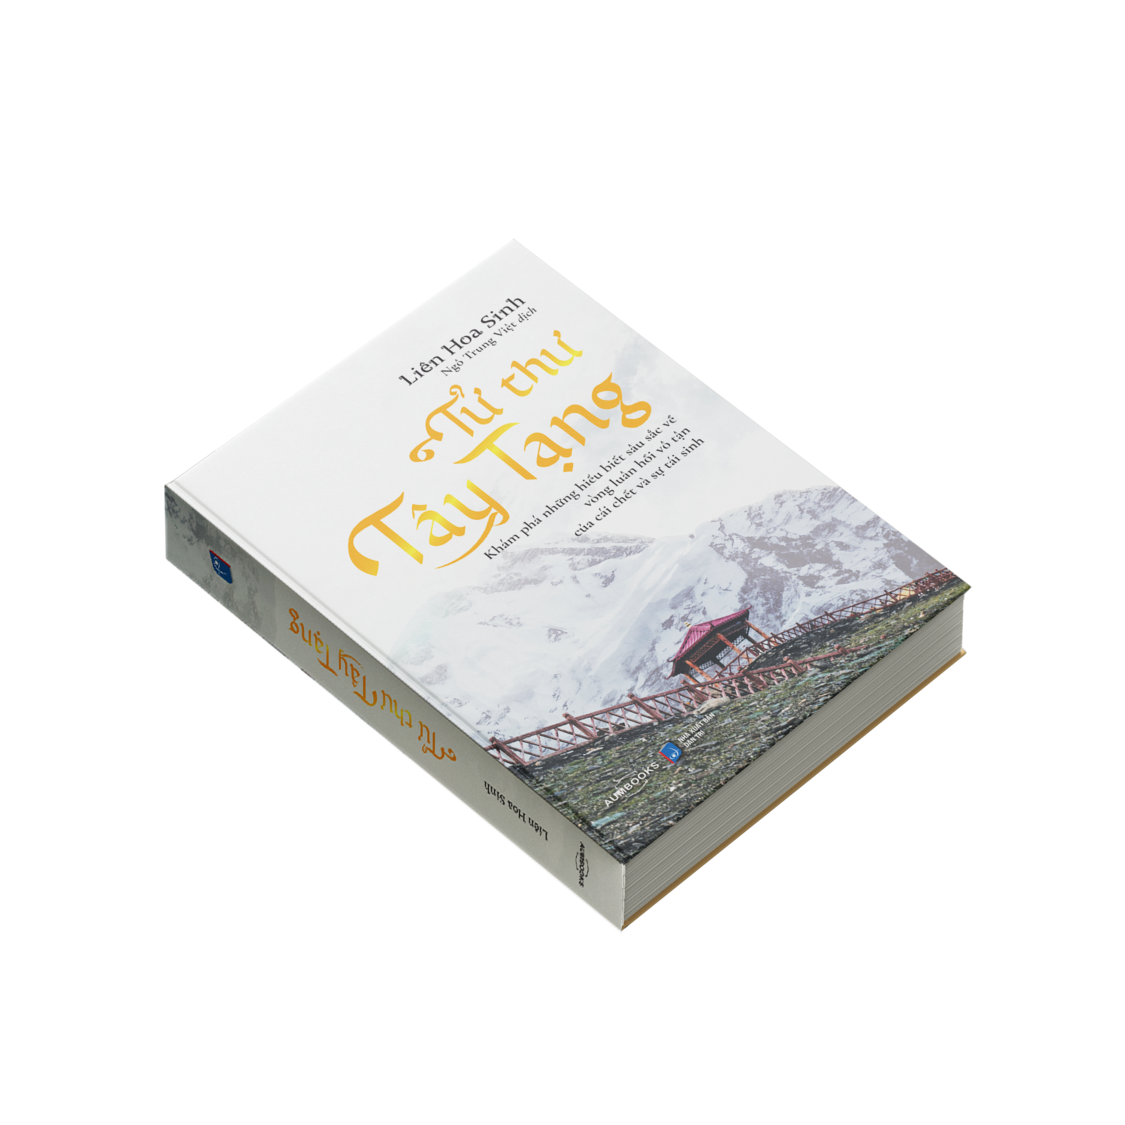 Sách Tử Thư Tây Tạng - Khám phá những hiểu biết sâu sắc về vòng luân hồi vô tận của cái chết và tái sinh - Á Châu Books, bìa cứng in màu